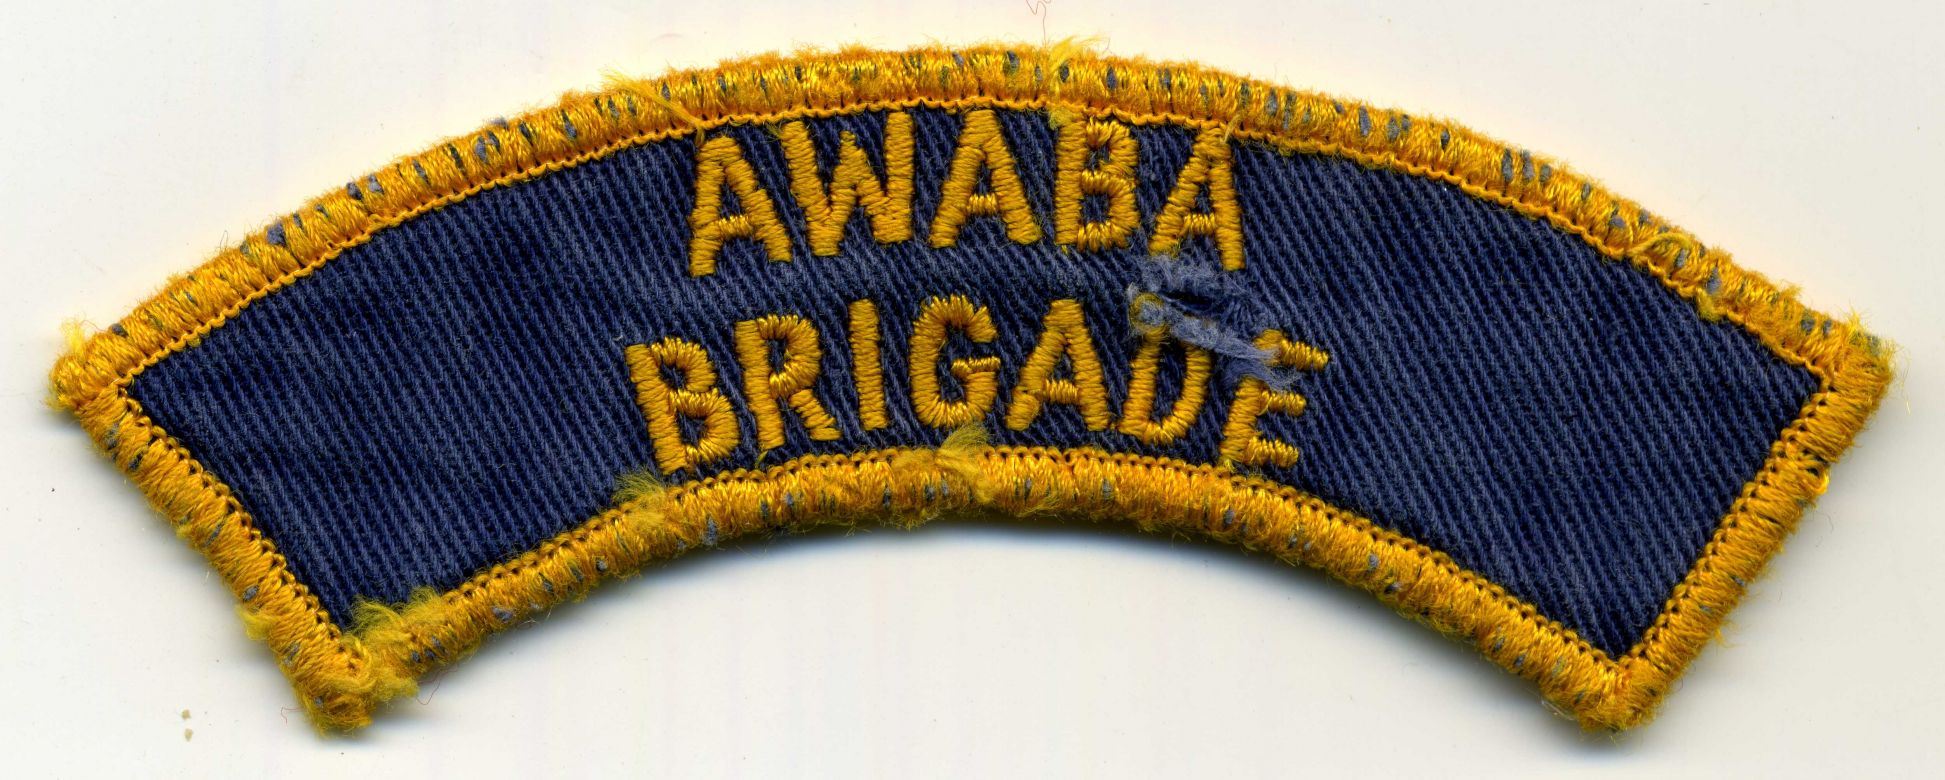 1973 - Awabe Brigade patch